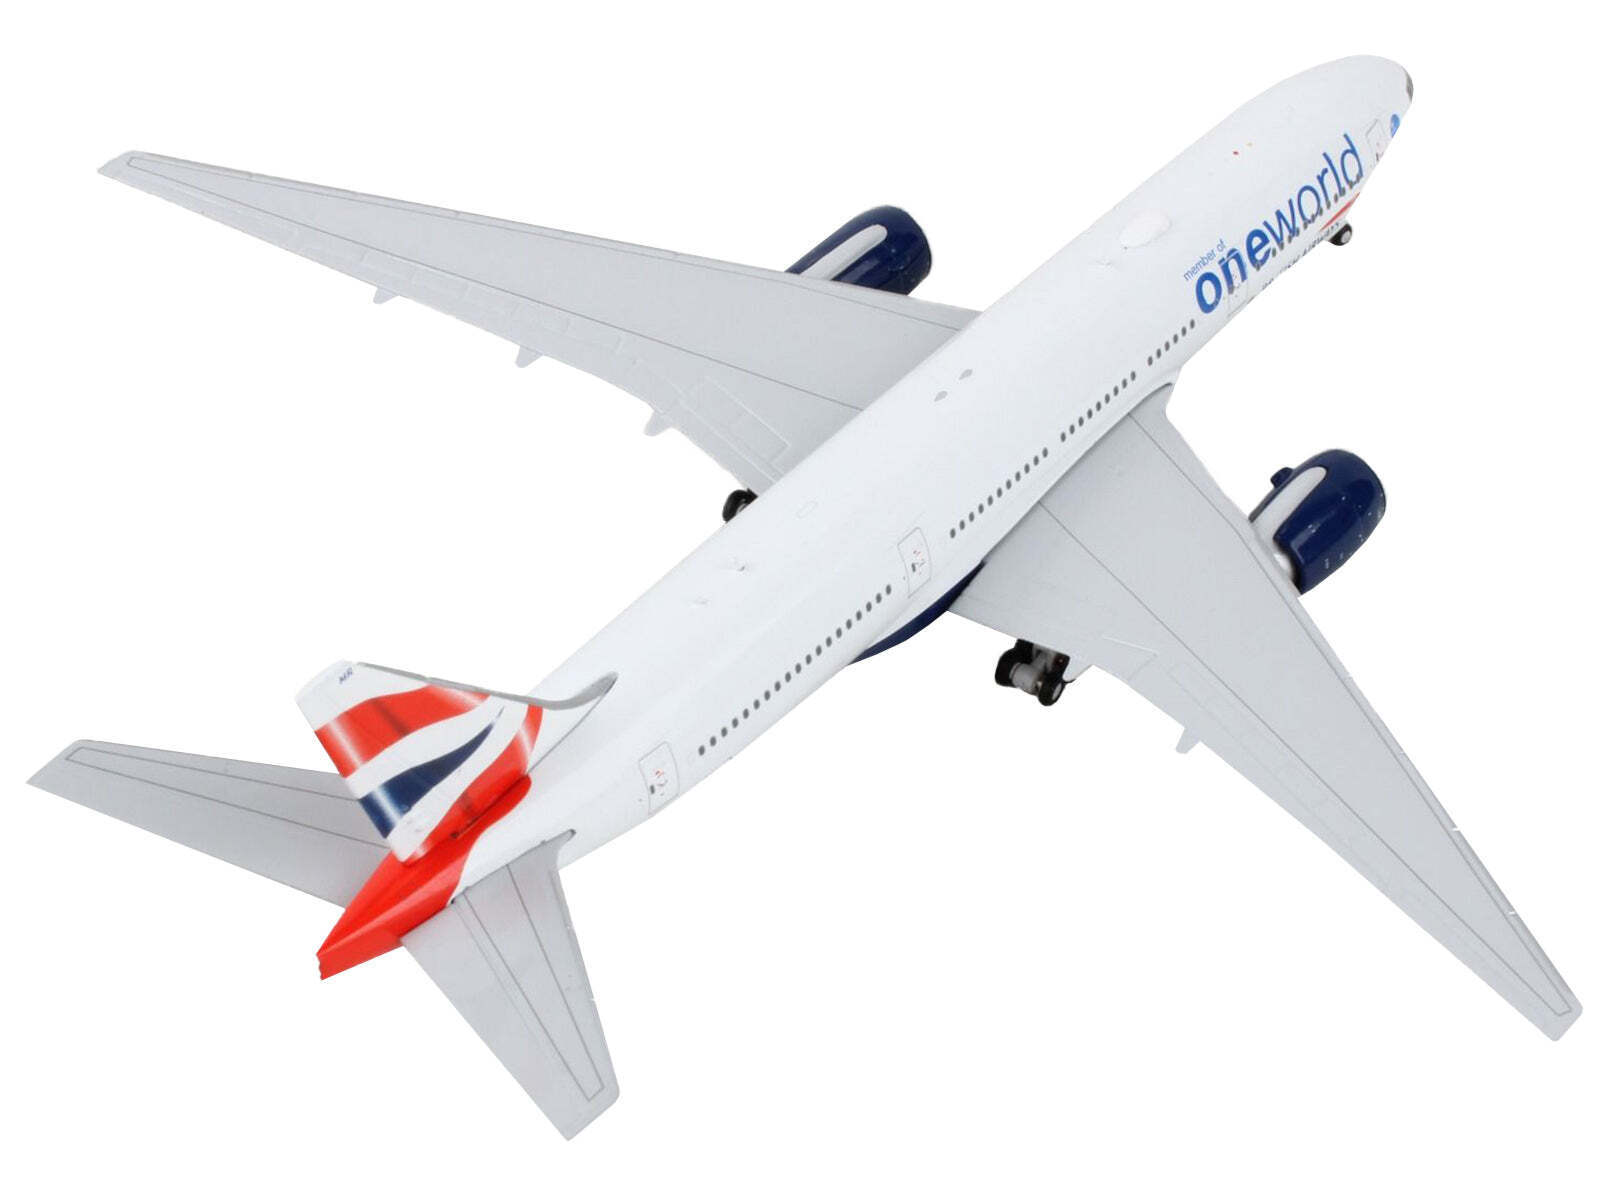 Boeing 777-200ER Commercial British Airways - 1/400 Diecast Model Airplane